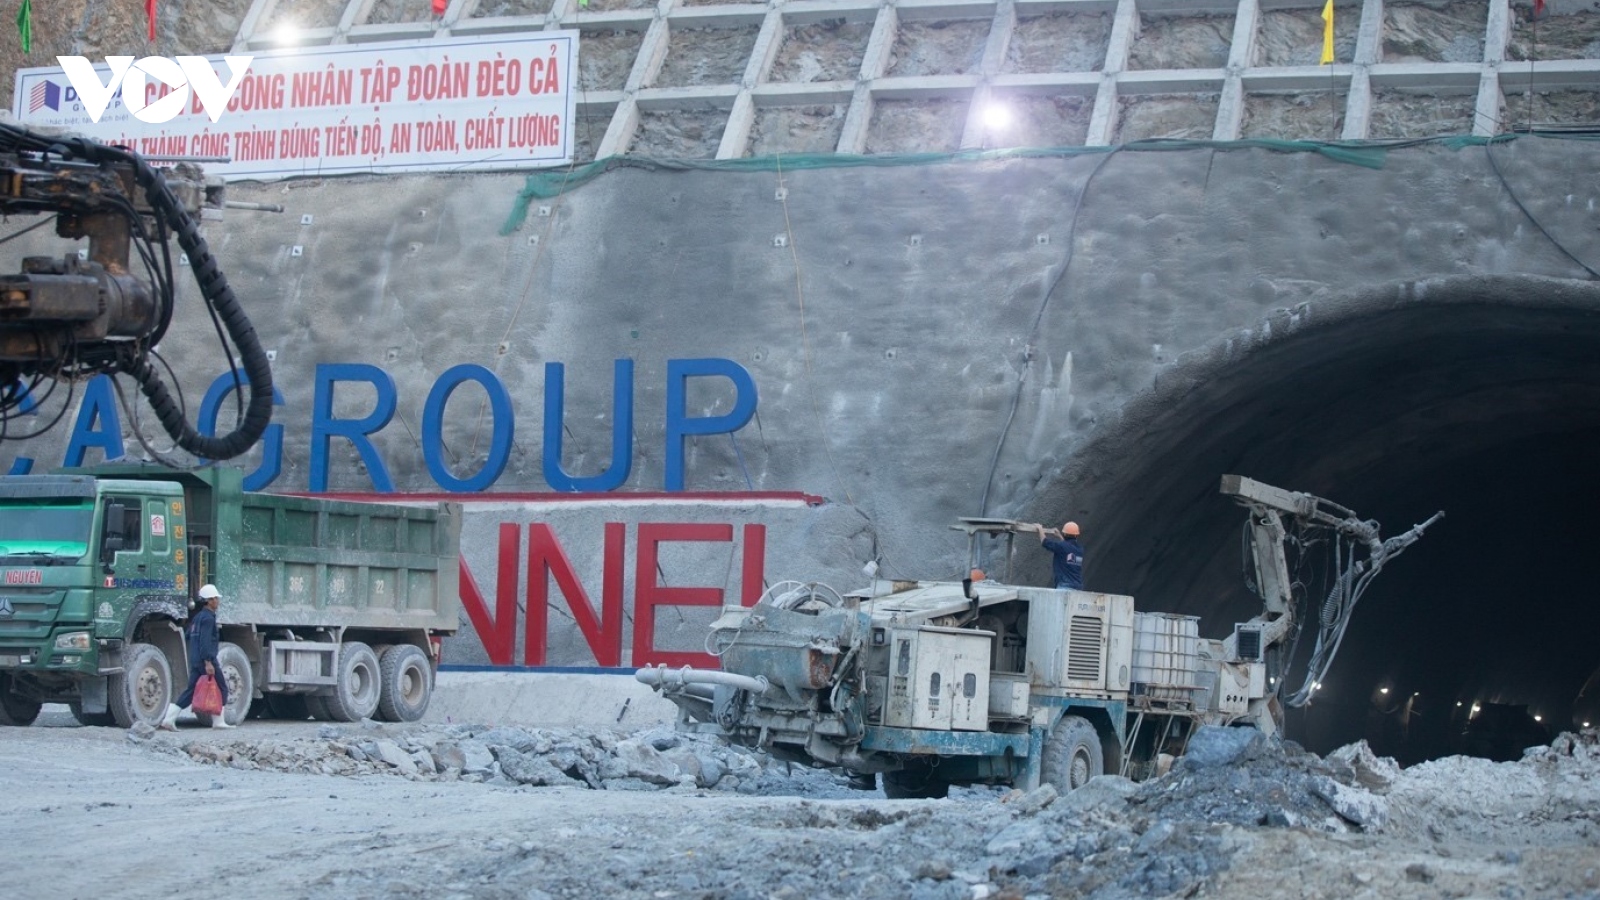 Thông hầm Trường Vinh, công trình lớn nhất tuyến cao tốc Bắc -Nam đoạn Nghi Sơn-Diễn Châu